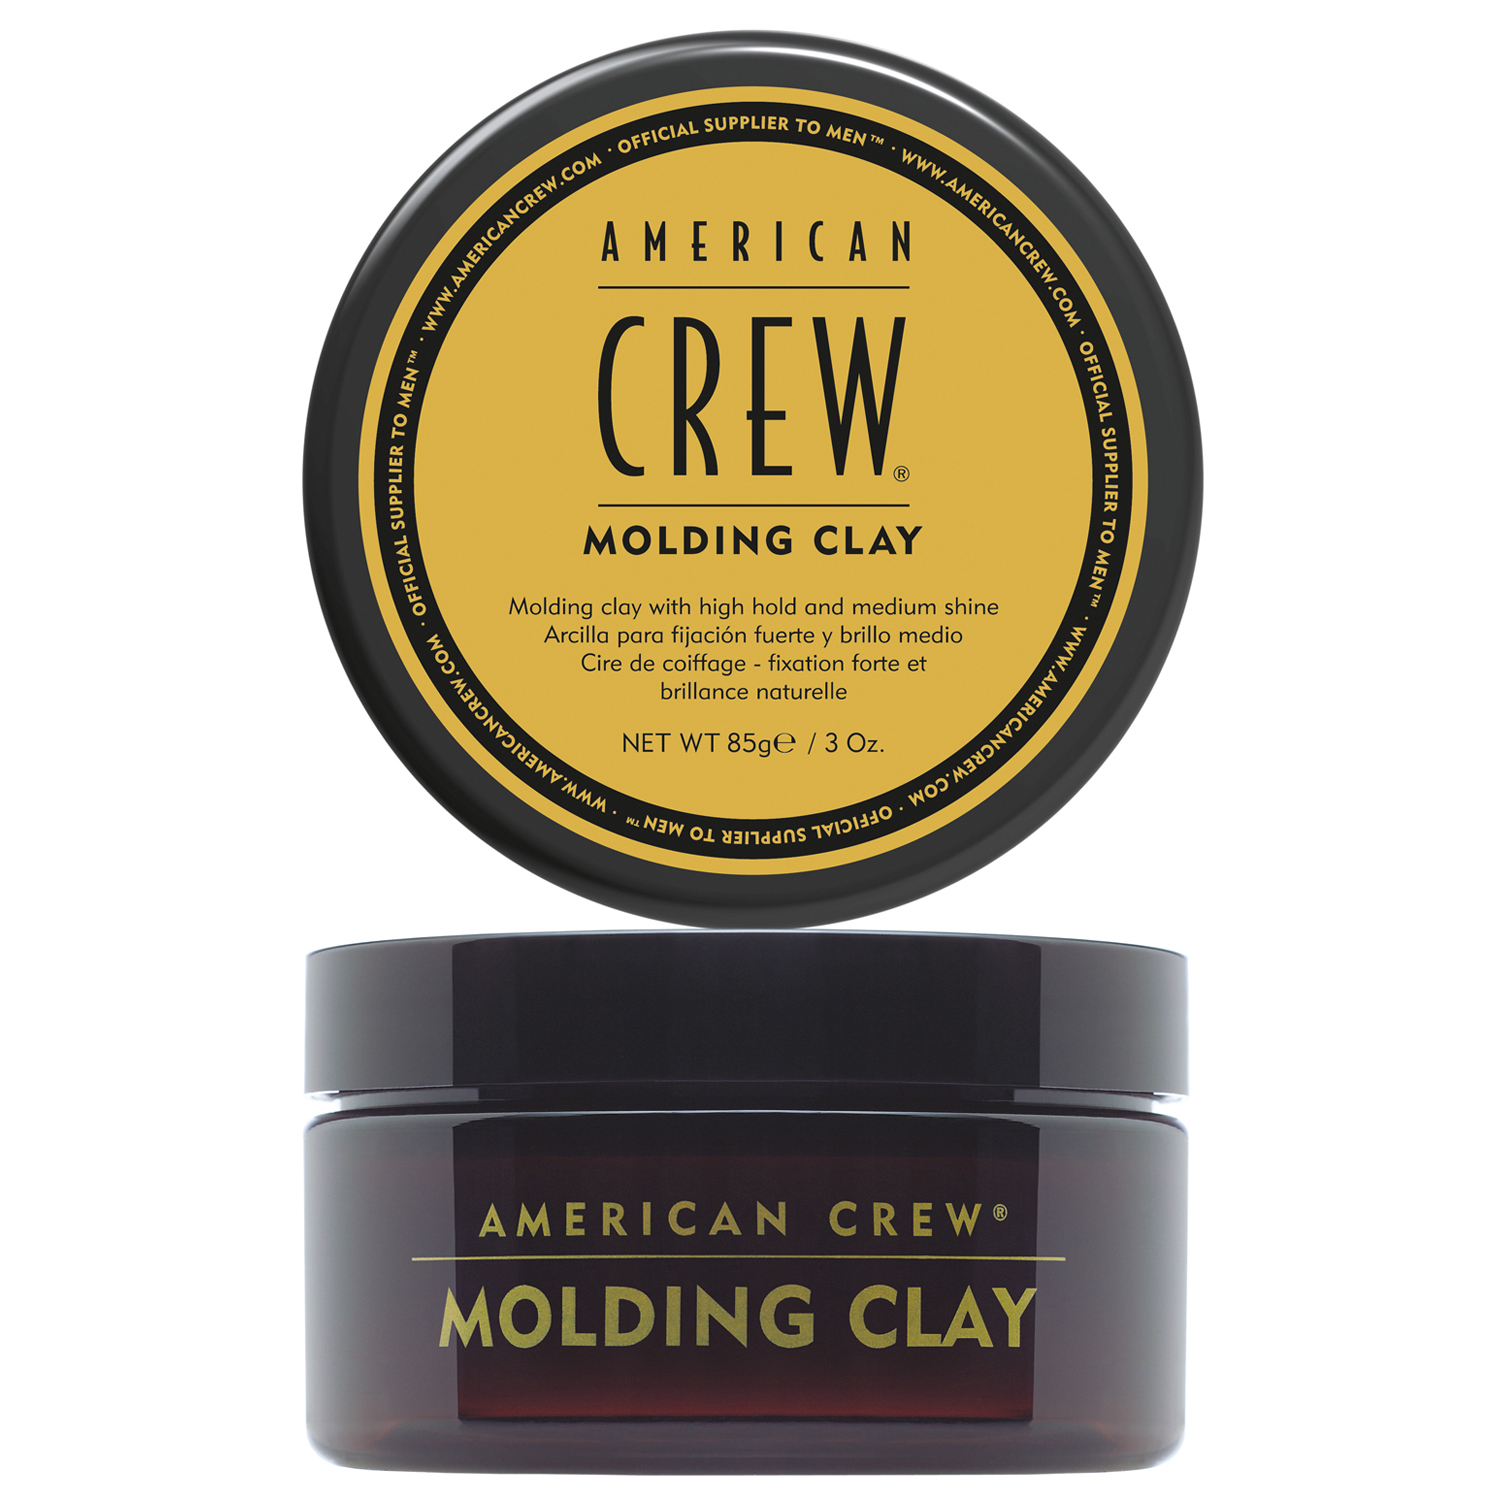 American Crew Моделирующая глина для укладки волос сильной фиксации Molding Clay, 85 г (American Crew, Styling) матовая глина для укладки american crew matte clay 85 г